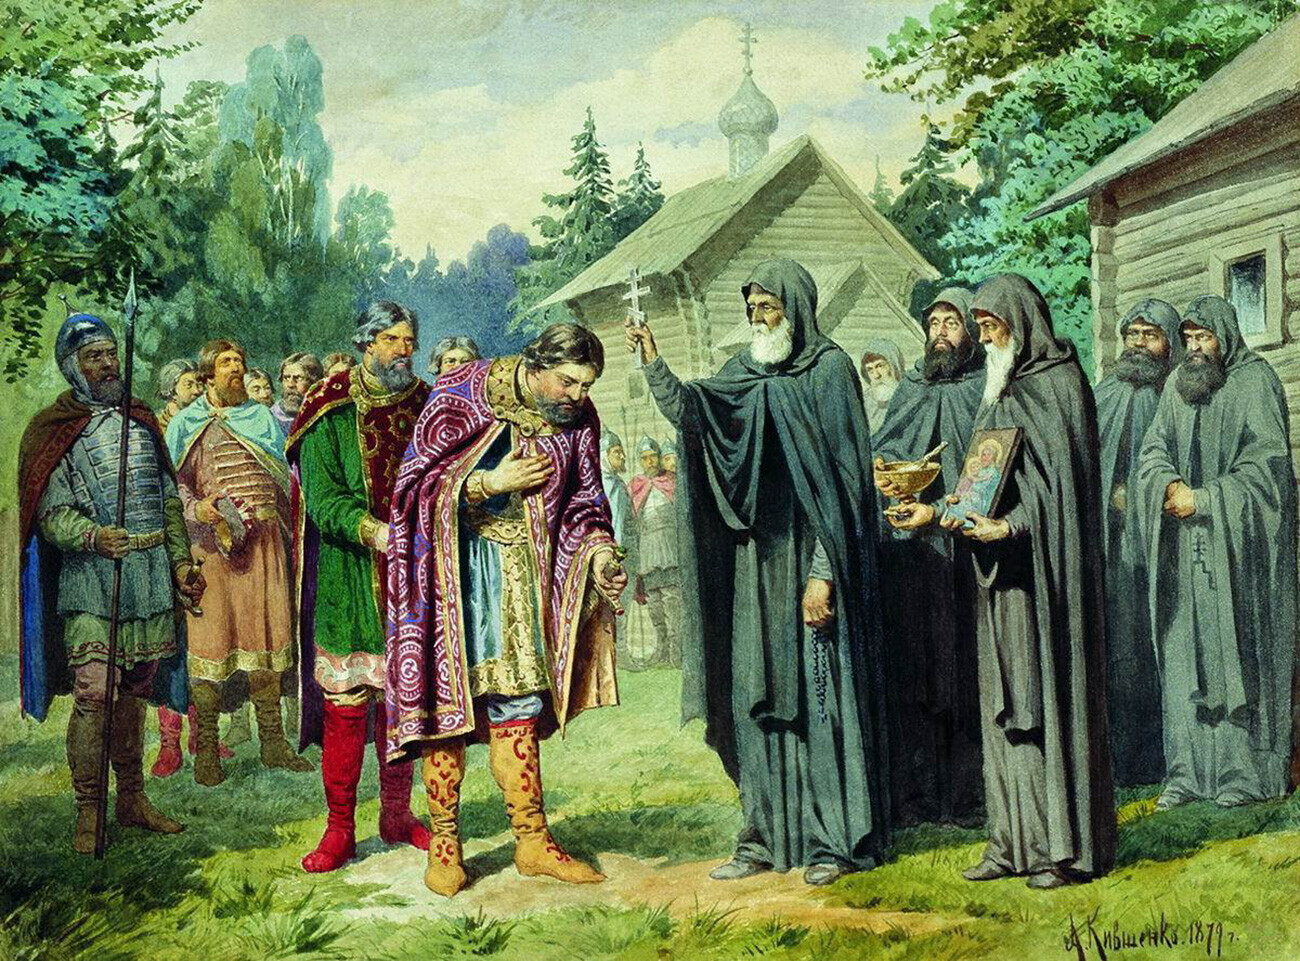 “O venerável Sérgio de Rádonej abençoa o sagrado Grande Príncipe Dmítri Donskói antes da Batalha de Culikovo”, 1880.